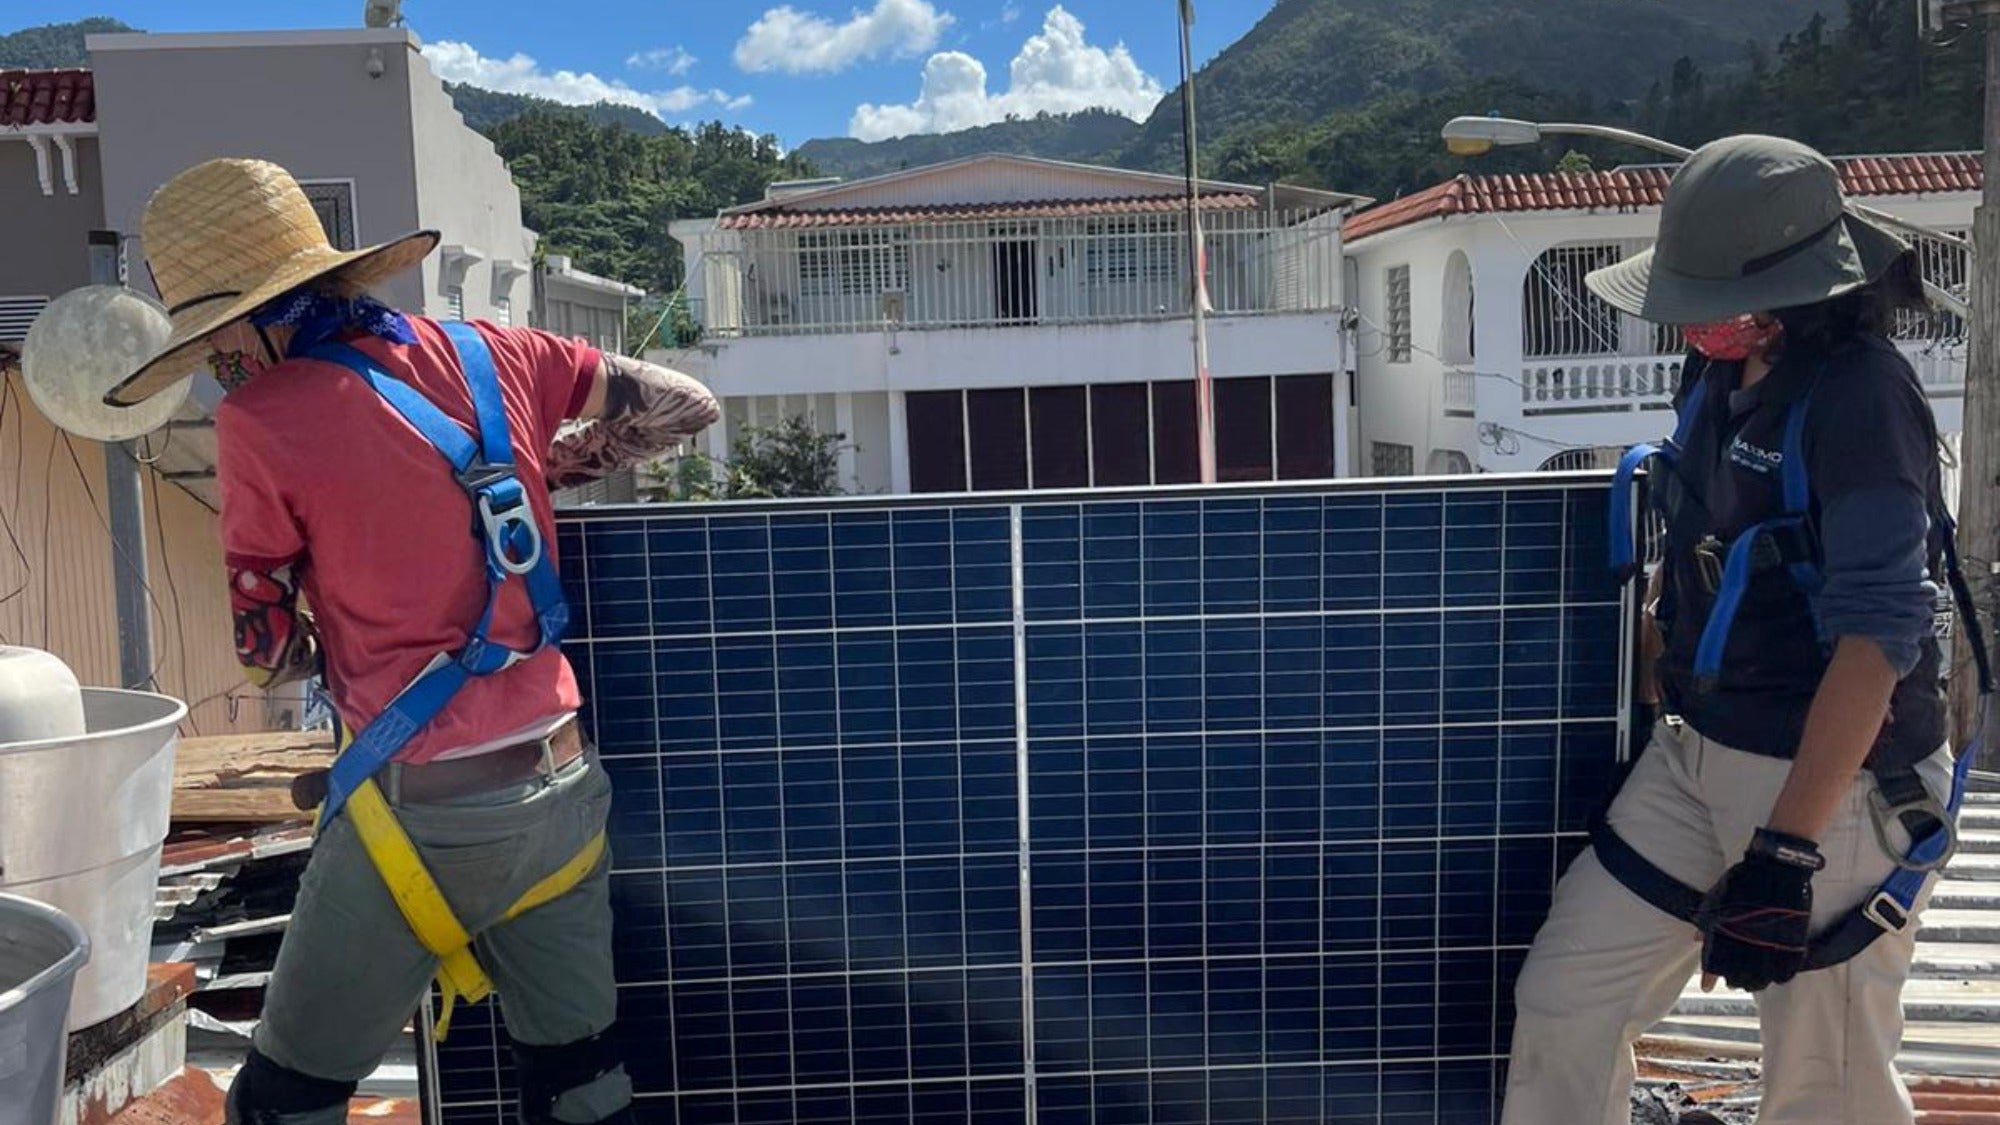 La energía solar de propiedad comunitaria pronto alimentará este pequeño pueblo de montaña en Puerto Rico